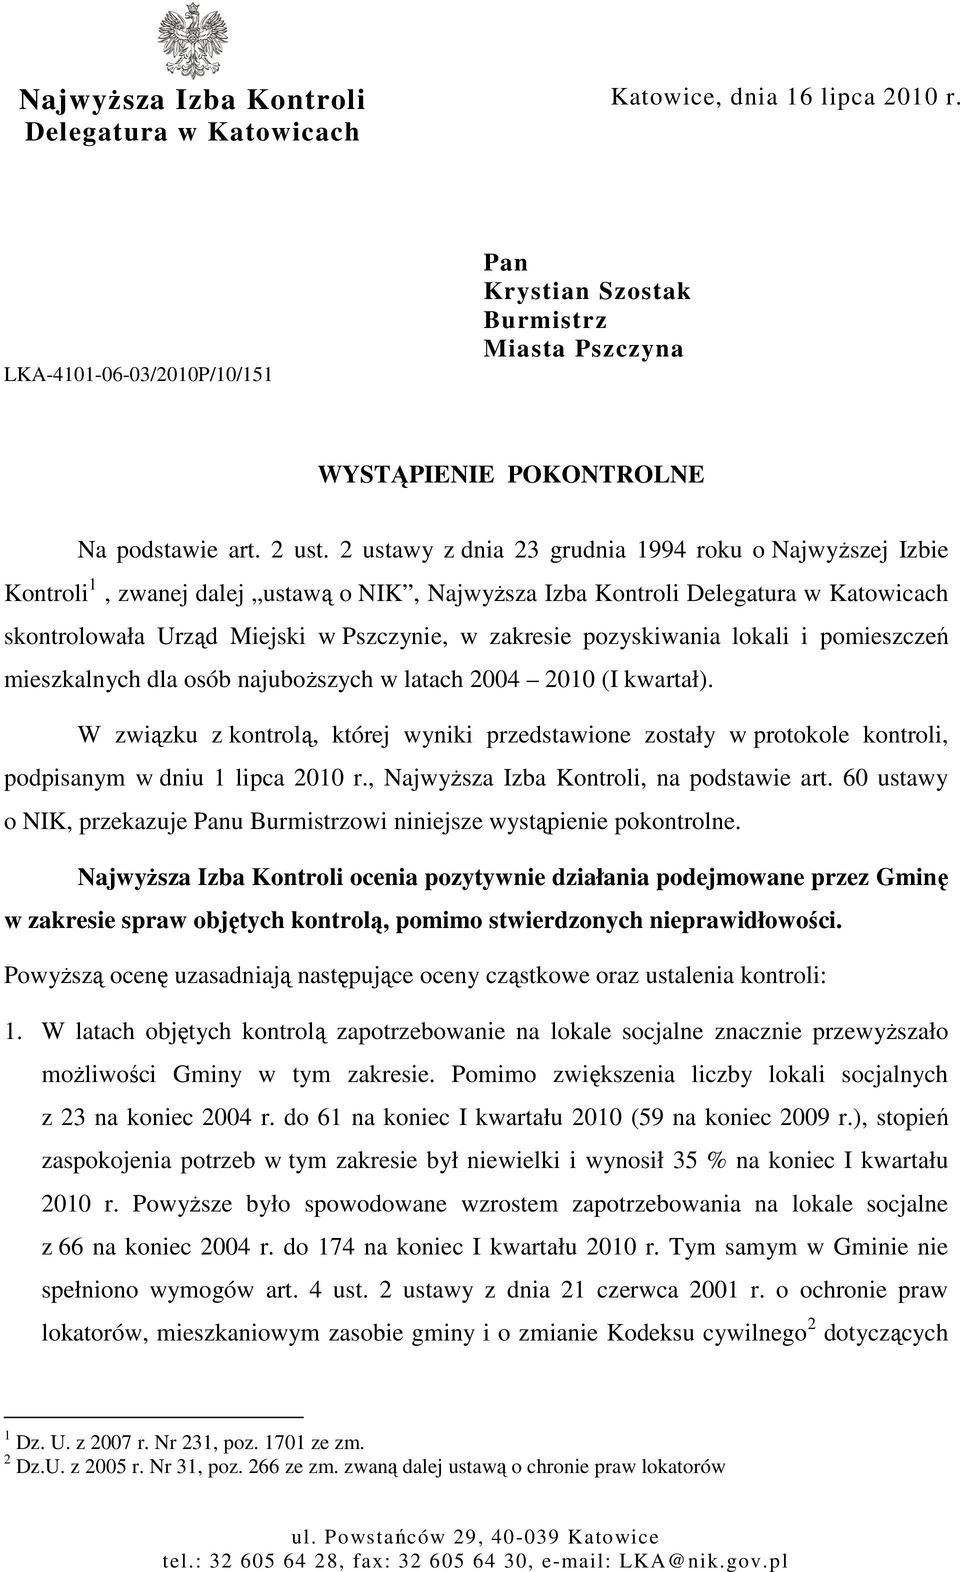 2 ustawy z dnia 23 grudnia 1994 roku o NajwyŜszej Izbie Kontroli 1, zwanej dalej ustawą o NIK, NajwyŜsza Izba Kontroli Delegatura w Katowicach skontrolowała Urząd Miejski w Pszczynie, w zakresie